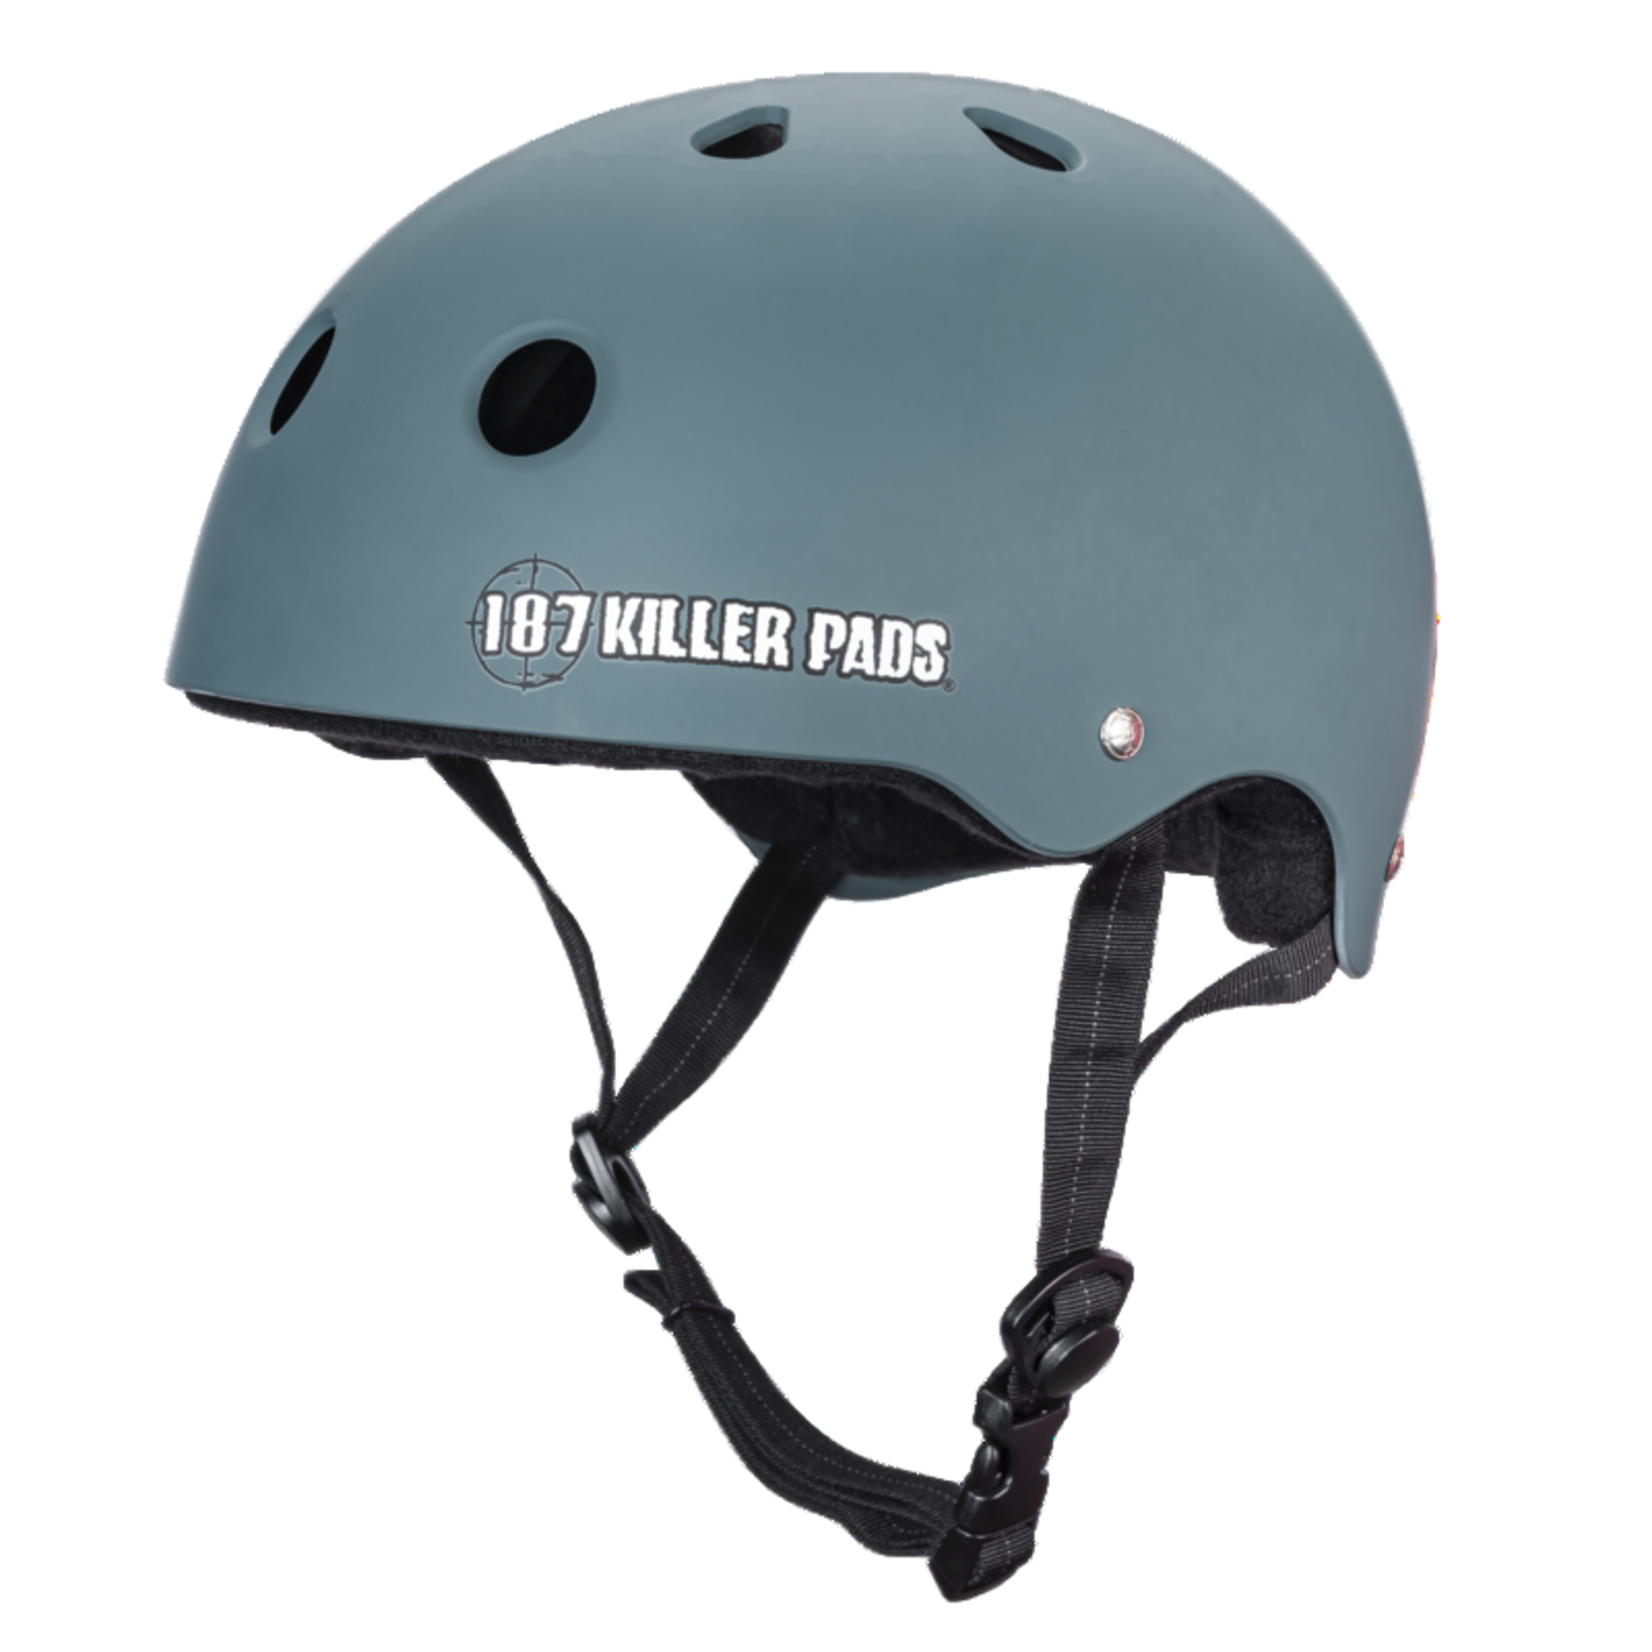 187 Killer Pads 187 Killer Pads Pro Skate Helmet Stone Blue -